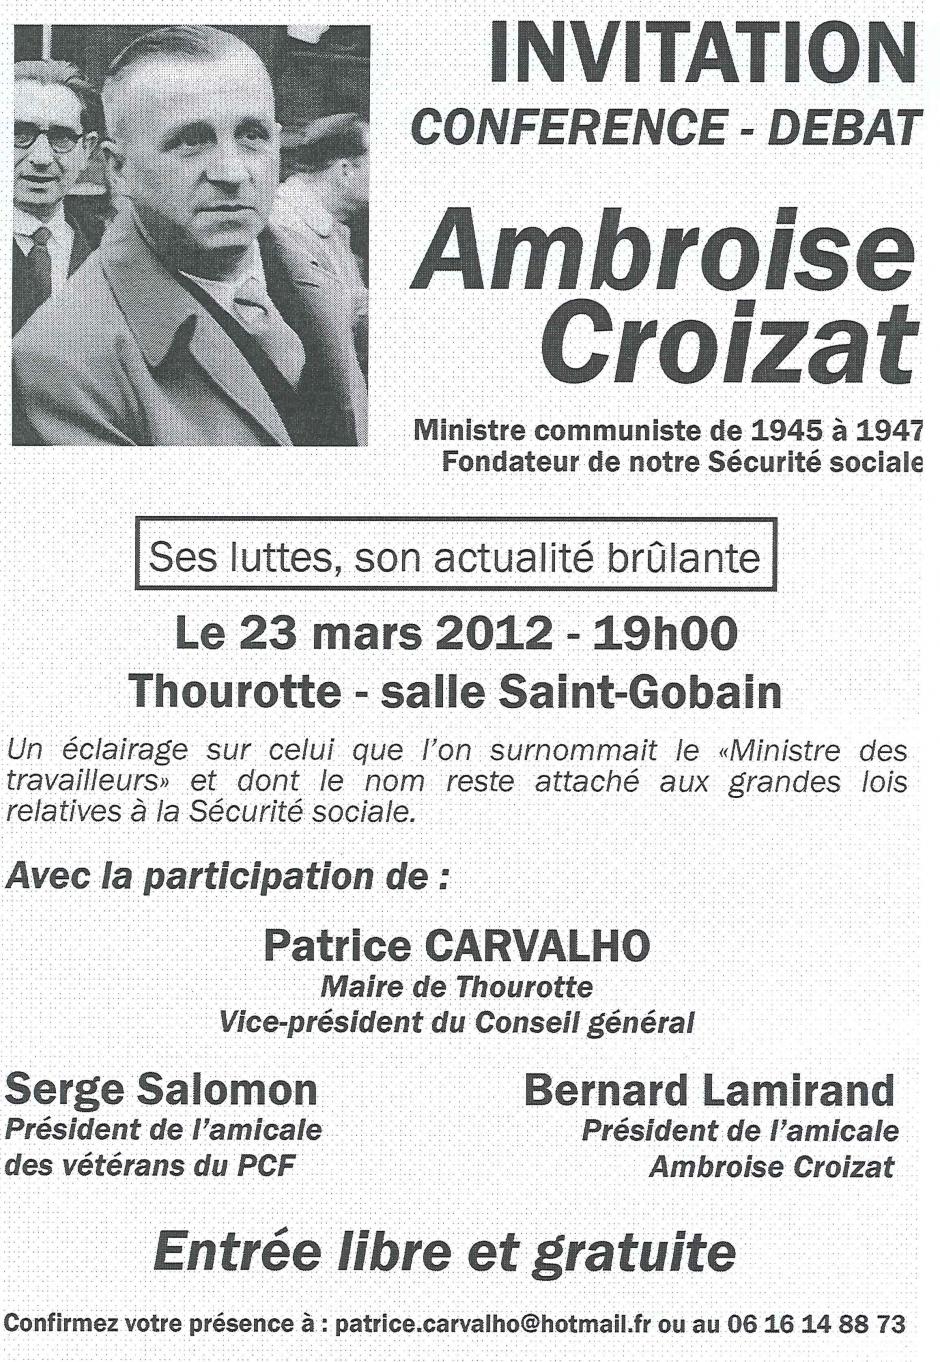 23 mars, Thourotte - Conférence-débat « Ambroise Croizat »